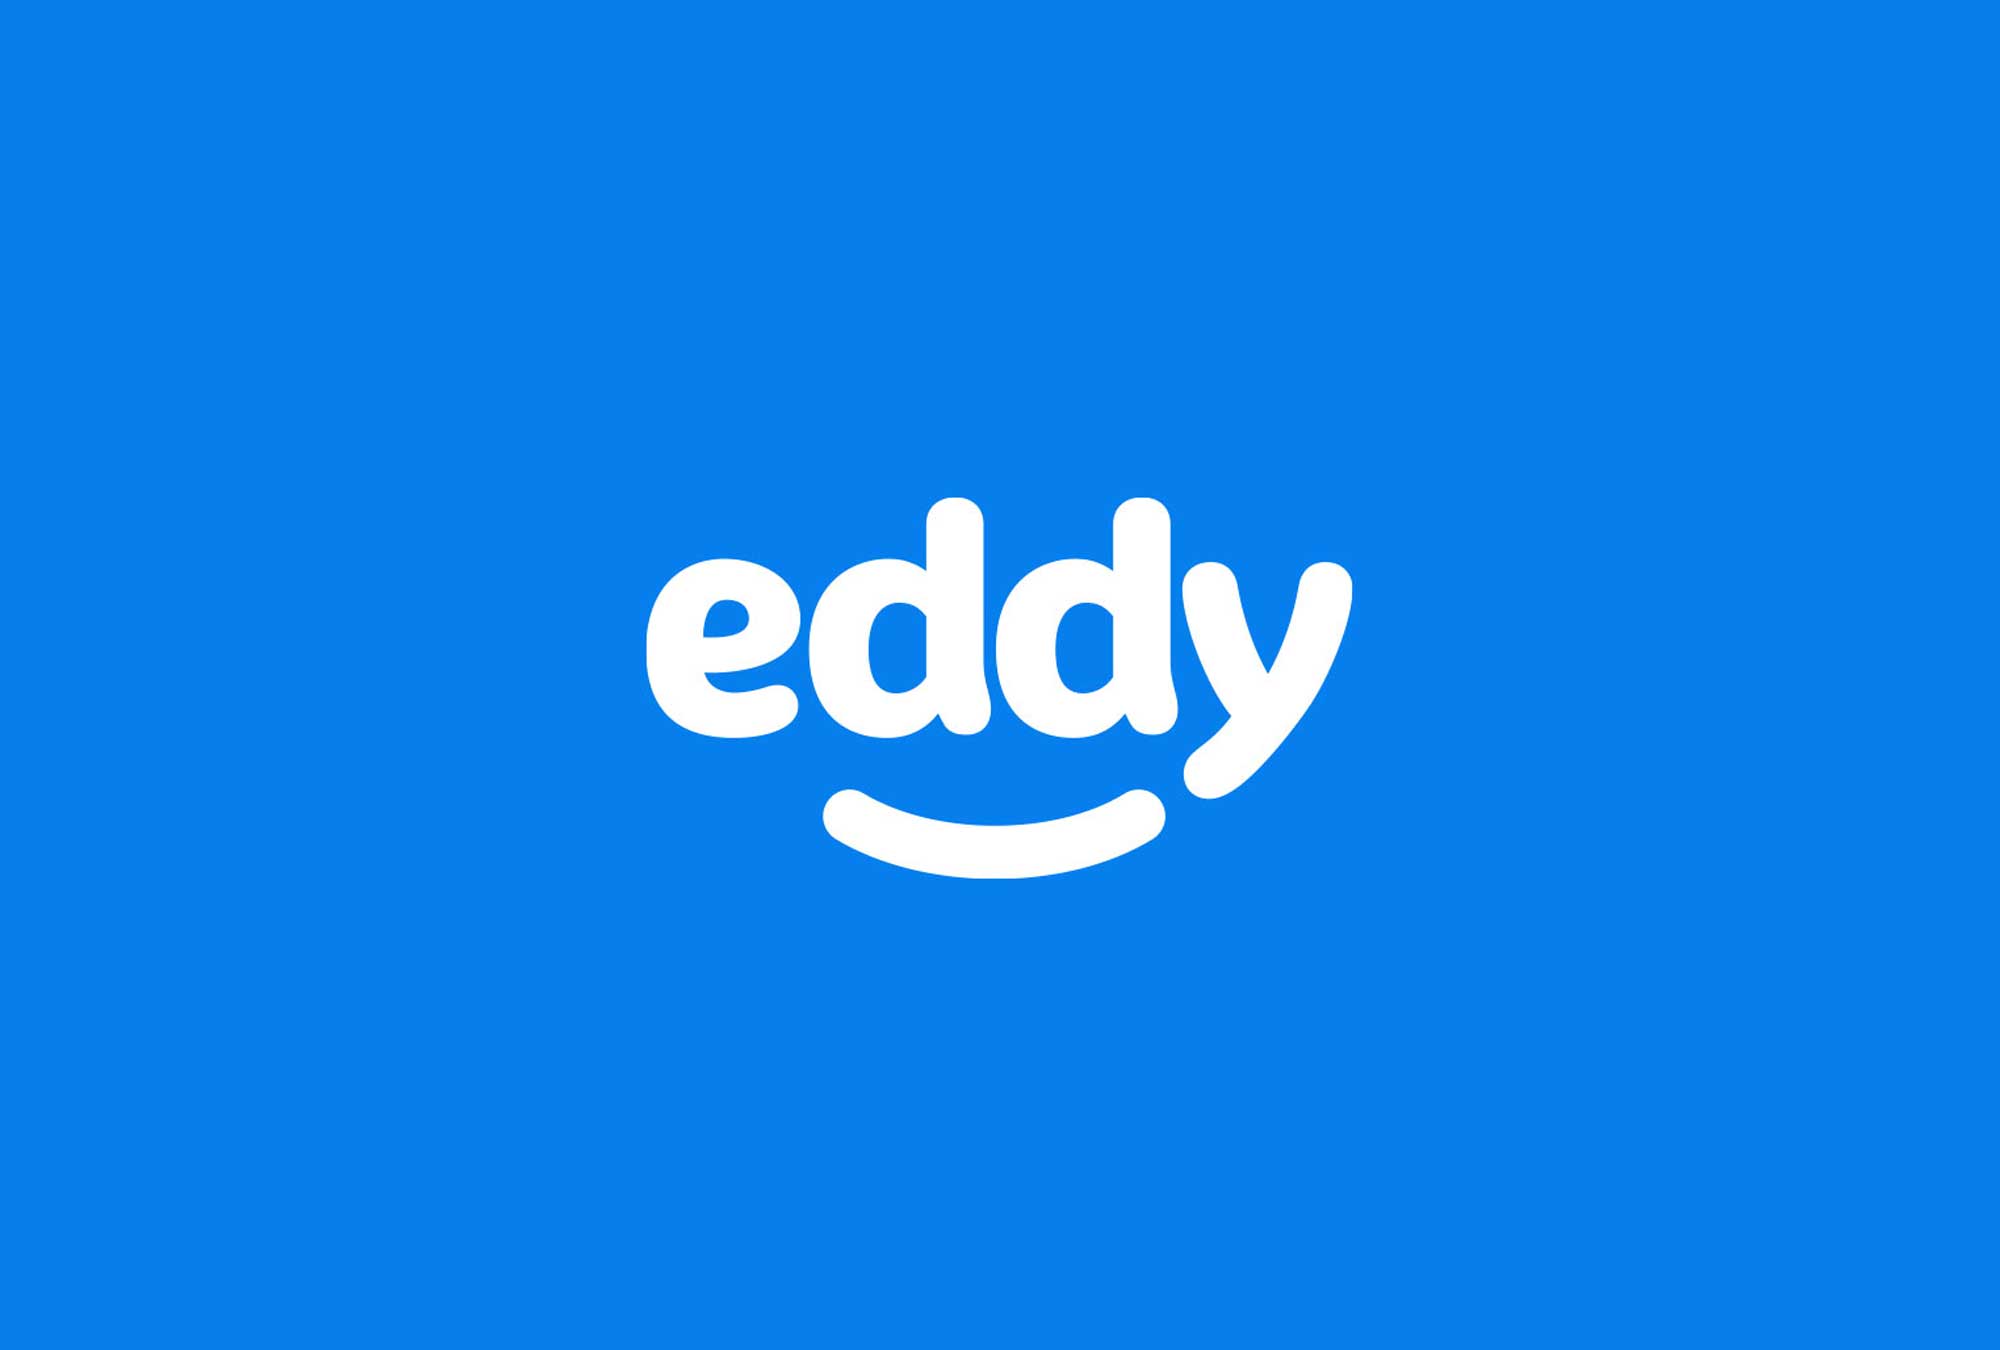 eddy_logo